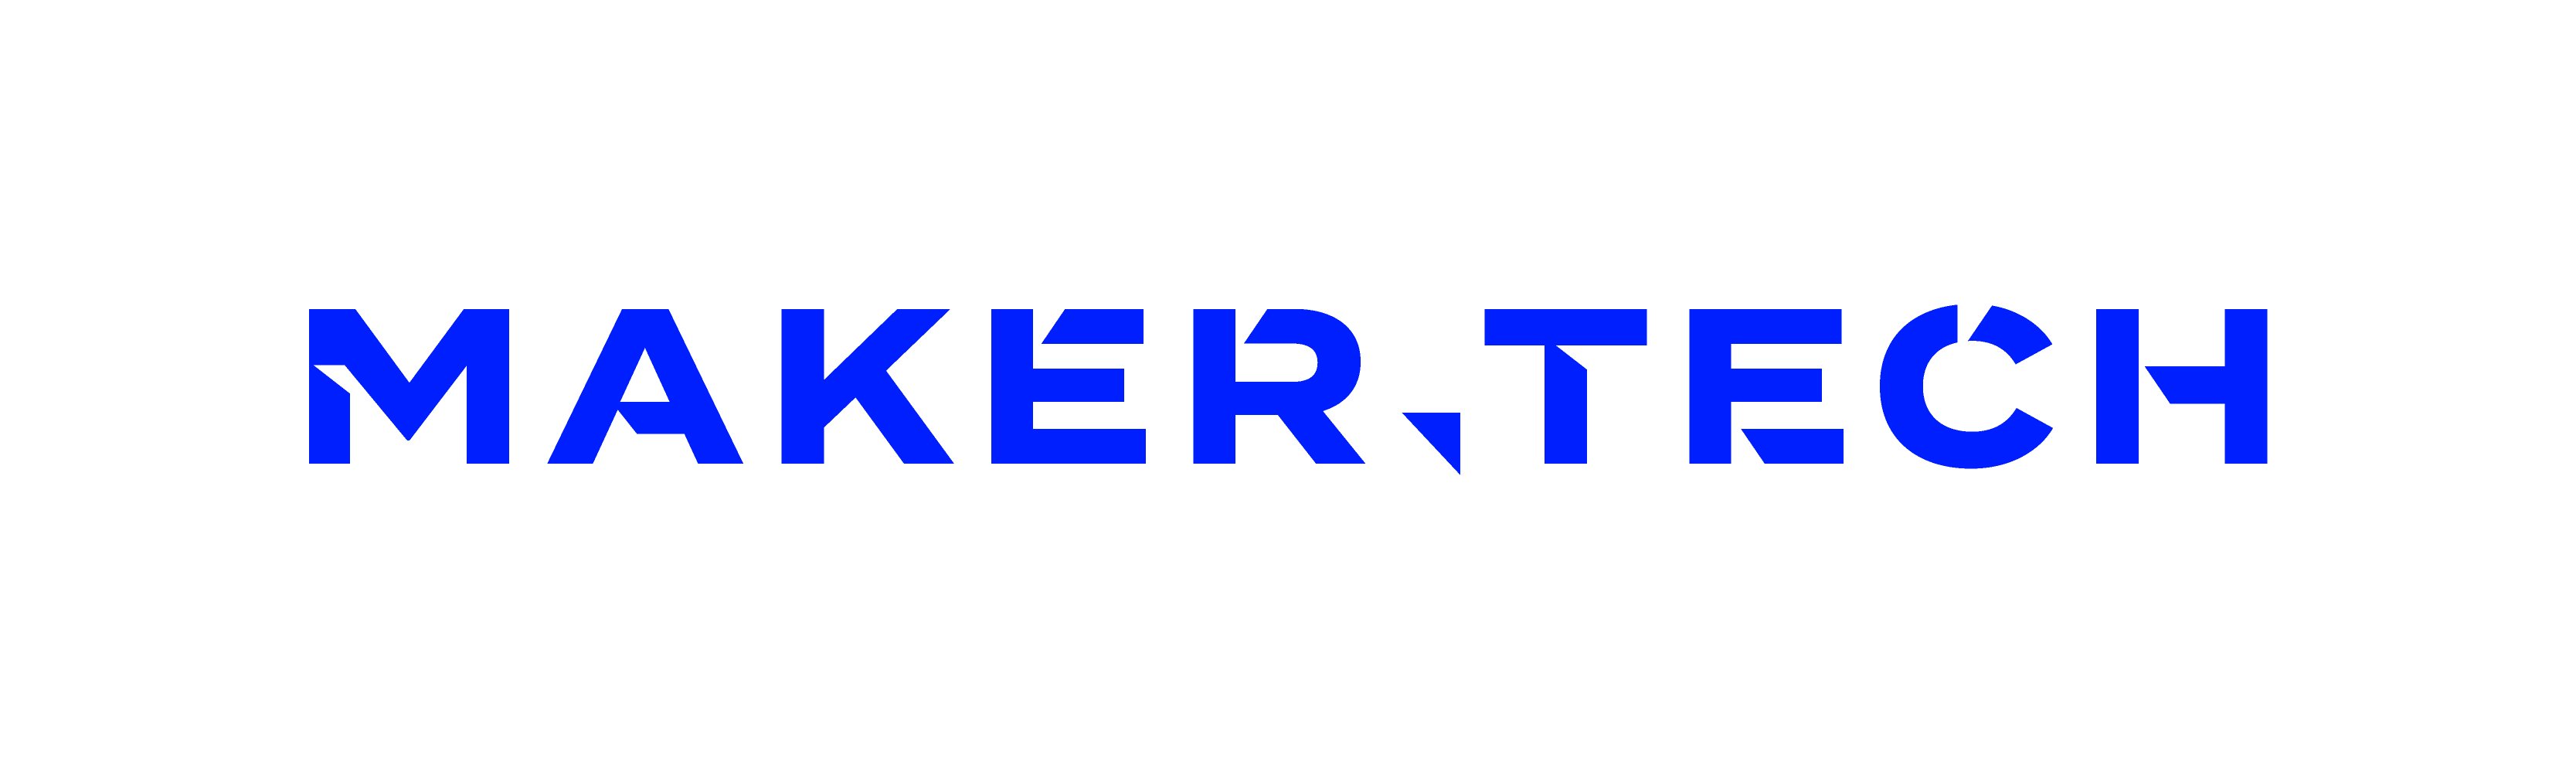 MakerTech